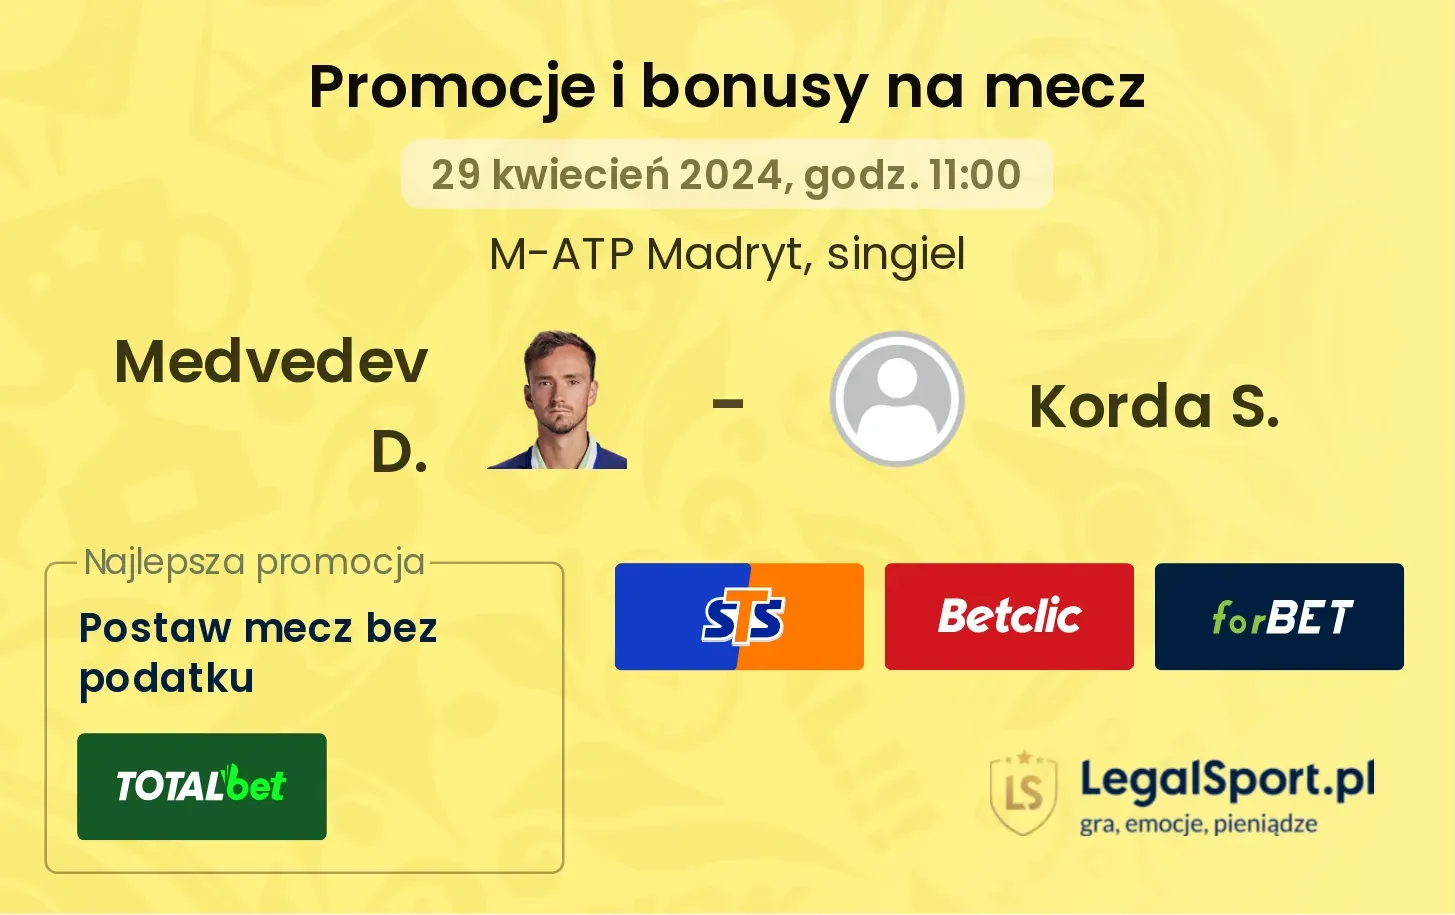 Medvedev D. - Korda S. promocje bonusy na mecz